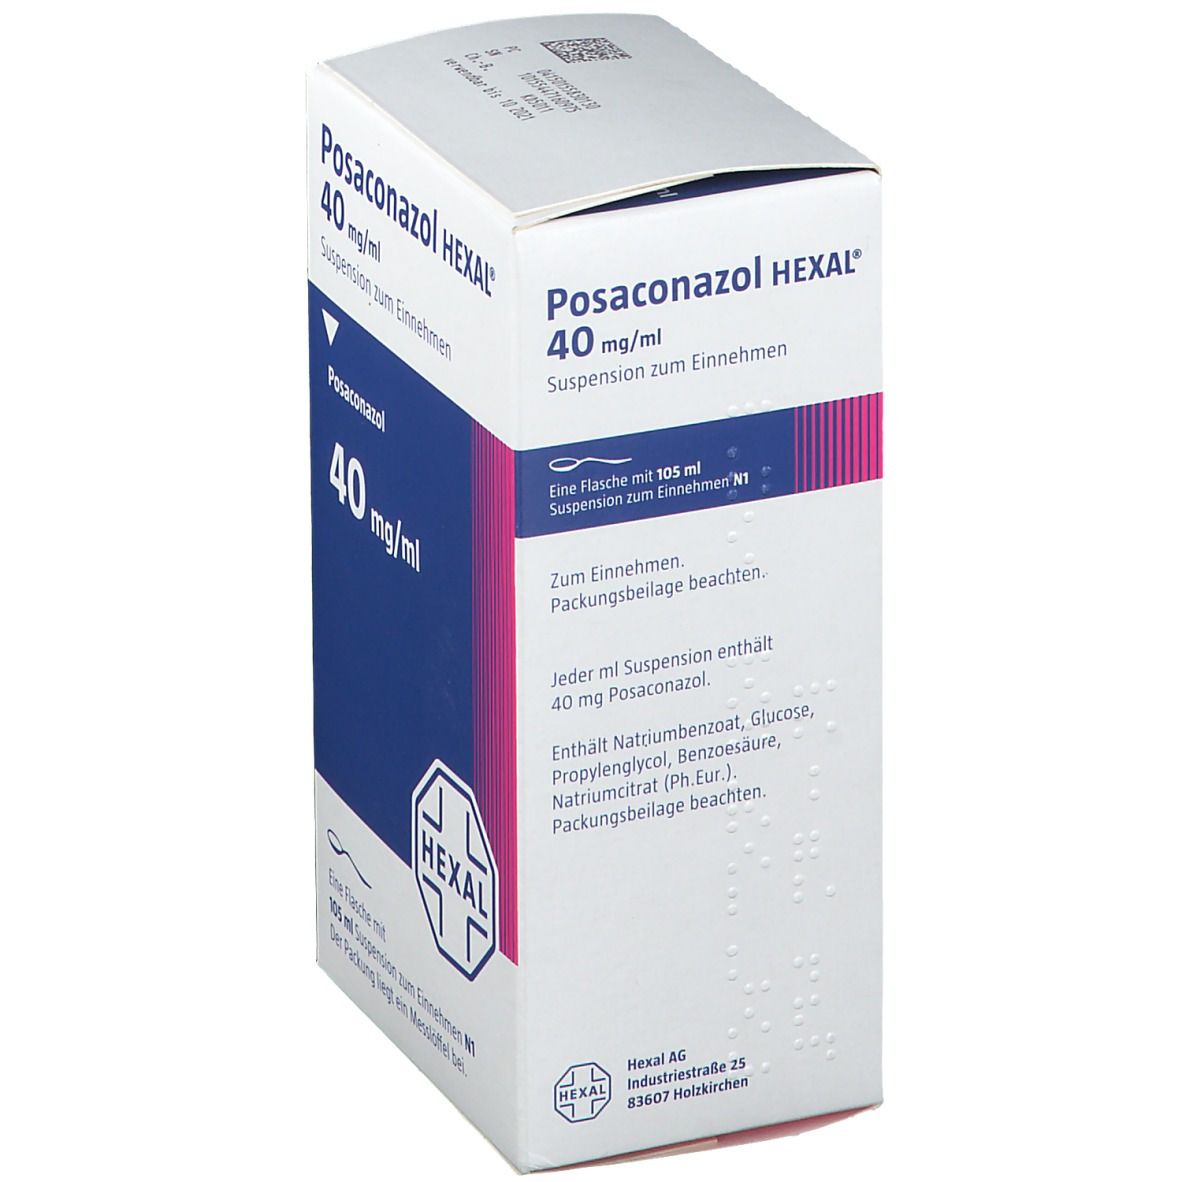 Posaconazol HEXAL® 40 mg/ml